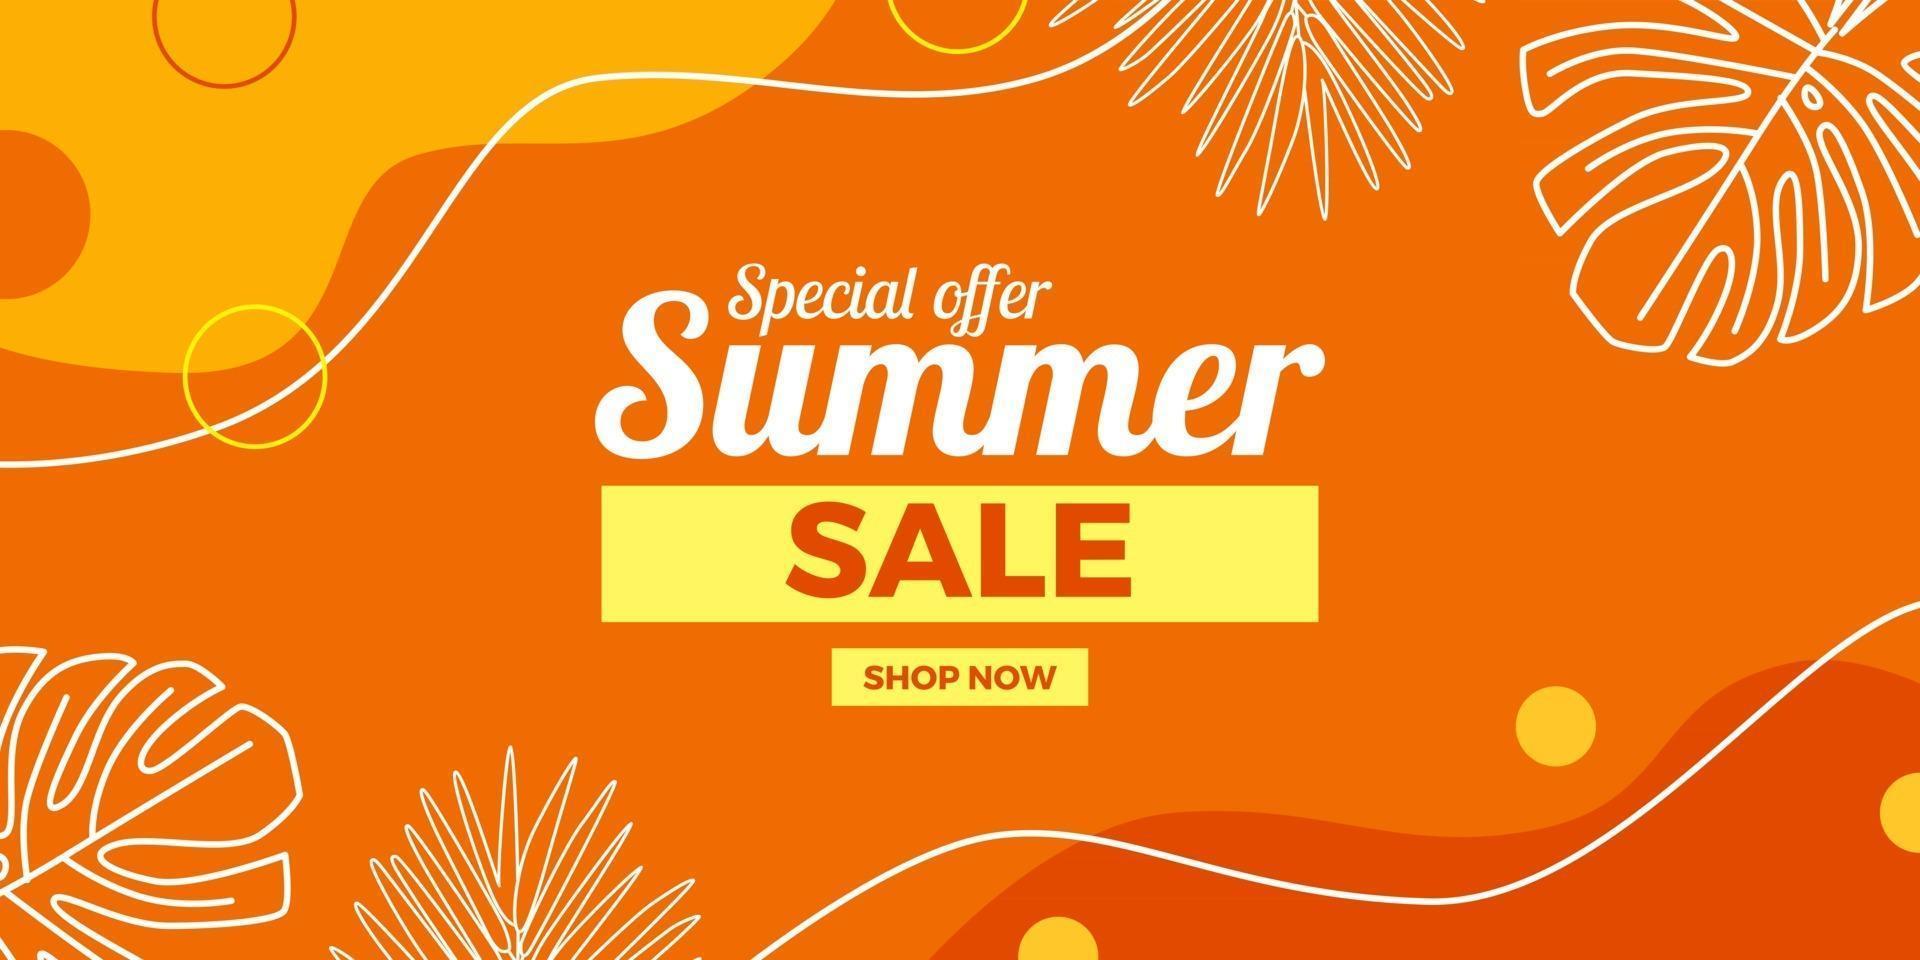 Oferta de venta de verano Banner de promoción de descuento con hojas de decoración de memphis abstracta y fondo naranja vector